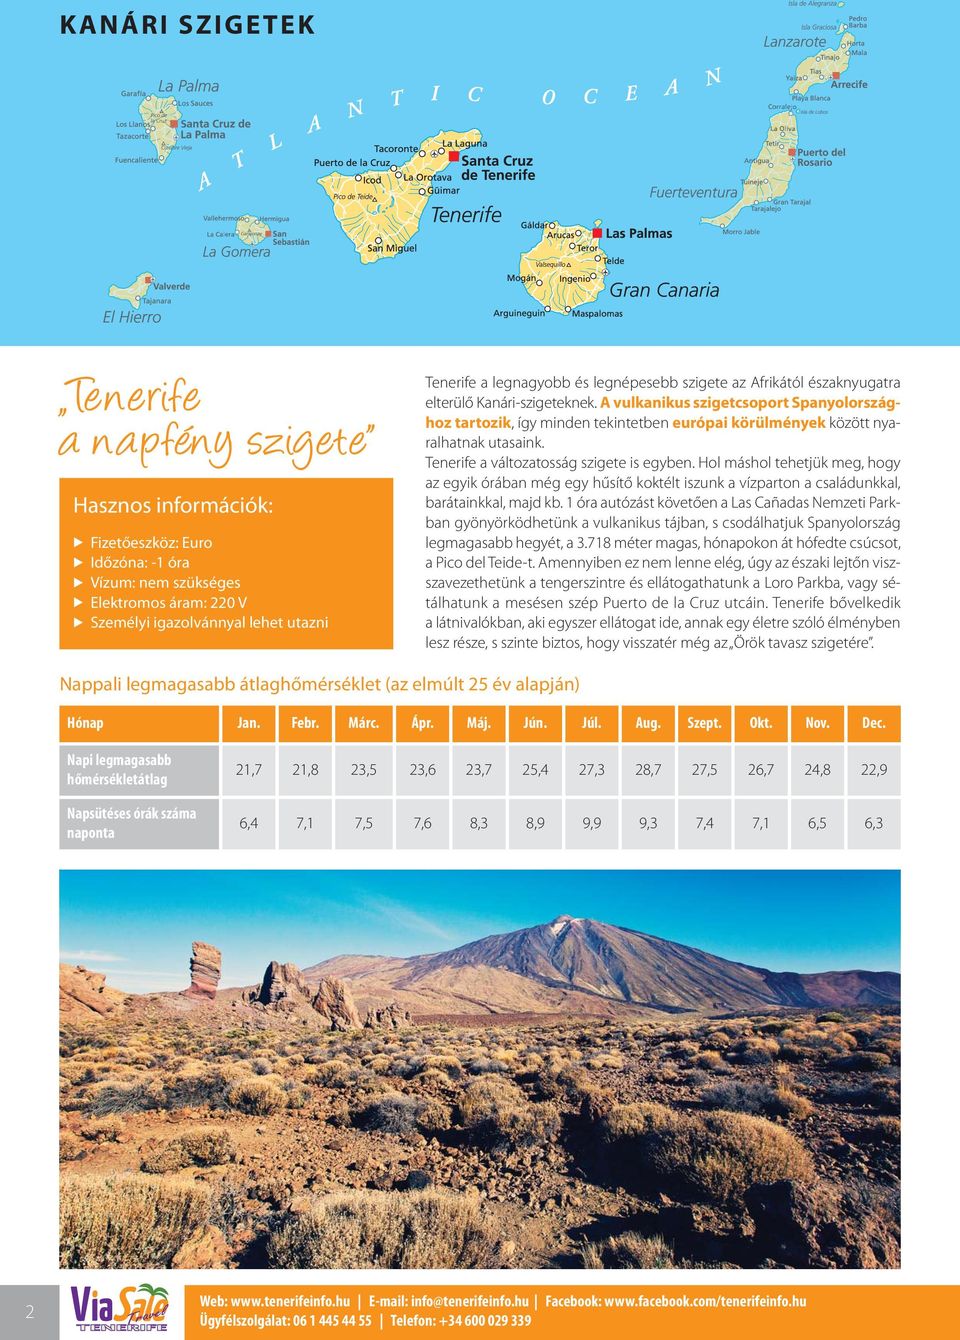 A vulkanikus szigetcsoport Spanyolországhoz tartozik, így minden tekintetben európai körülmények között nyaralhatnak utasaink. Tenerife a változatosság szigete is egyben.